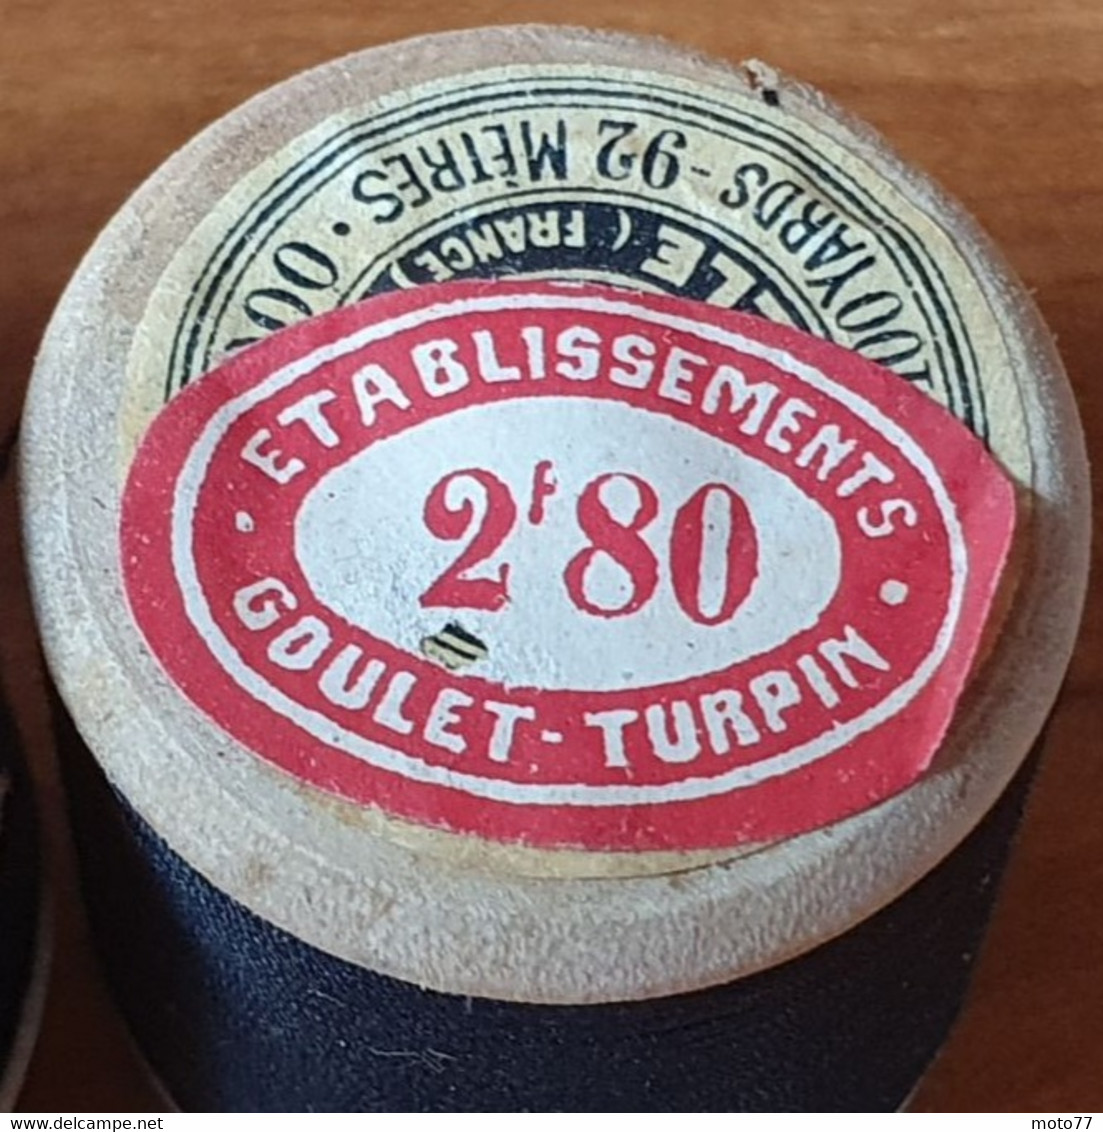 Lot 5 ROULEAUX bois anciens de FIL à Coudre Couture Couturière Mercerie PARIS - étiquette prix GOULET TURPIN - vers 1950